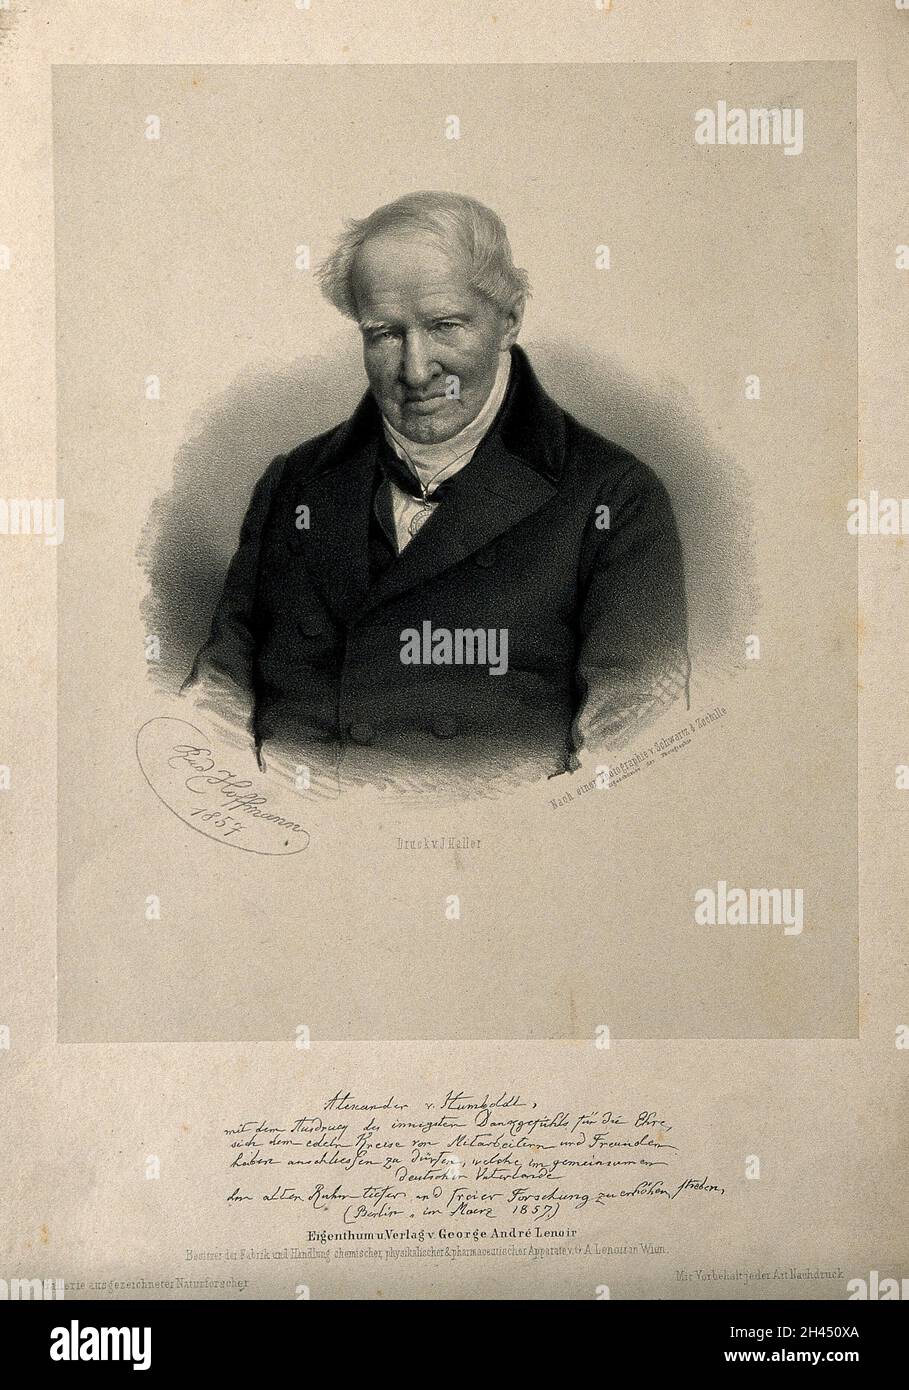 Friedrich Heinrich Alexander von Humboldt. Lithograph by R. Hoffmann, 1857, after Schwartz & Zschille. Stock Photo